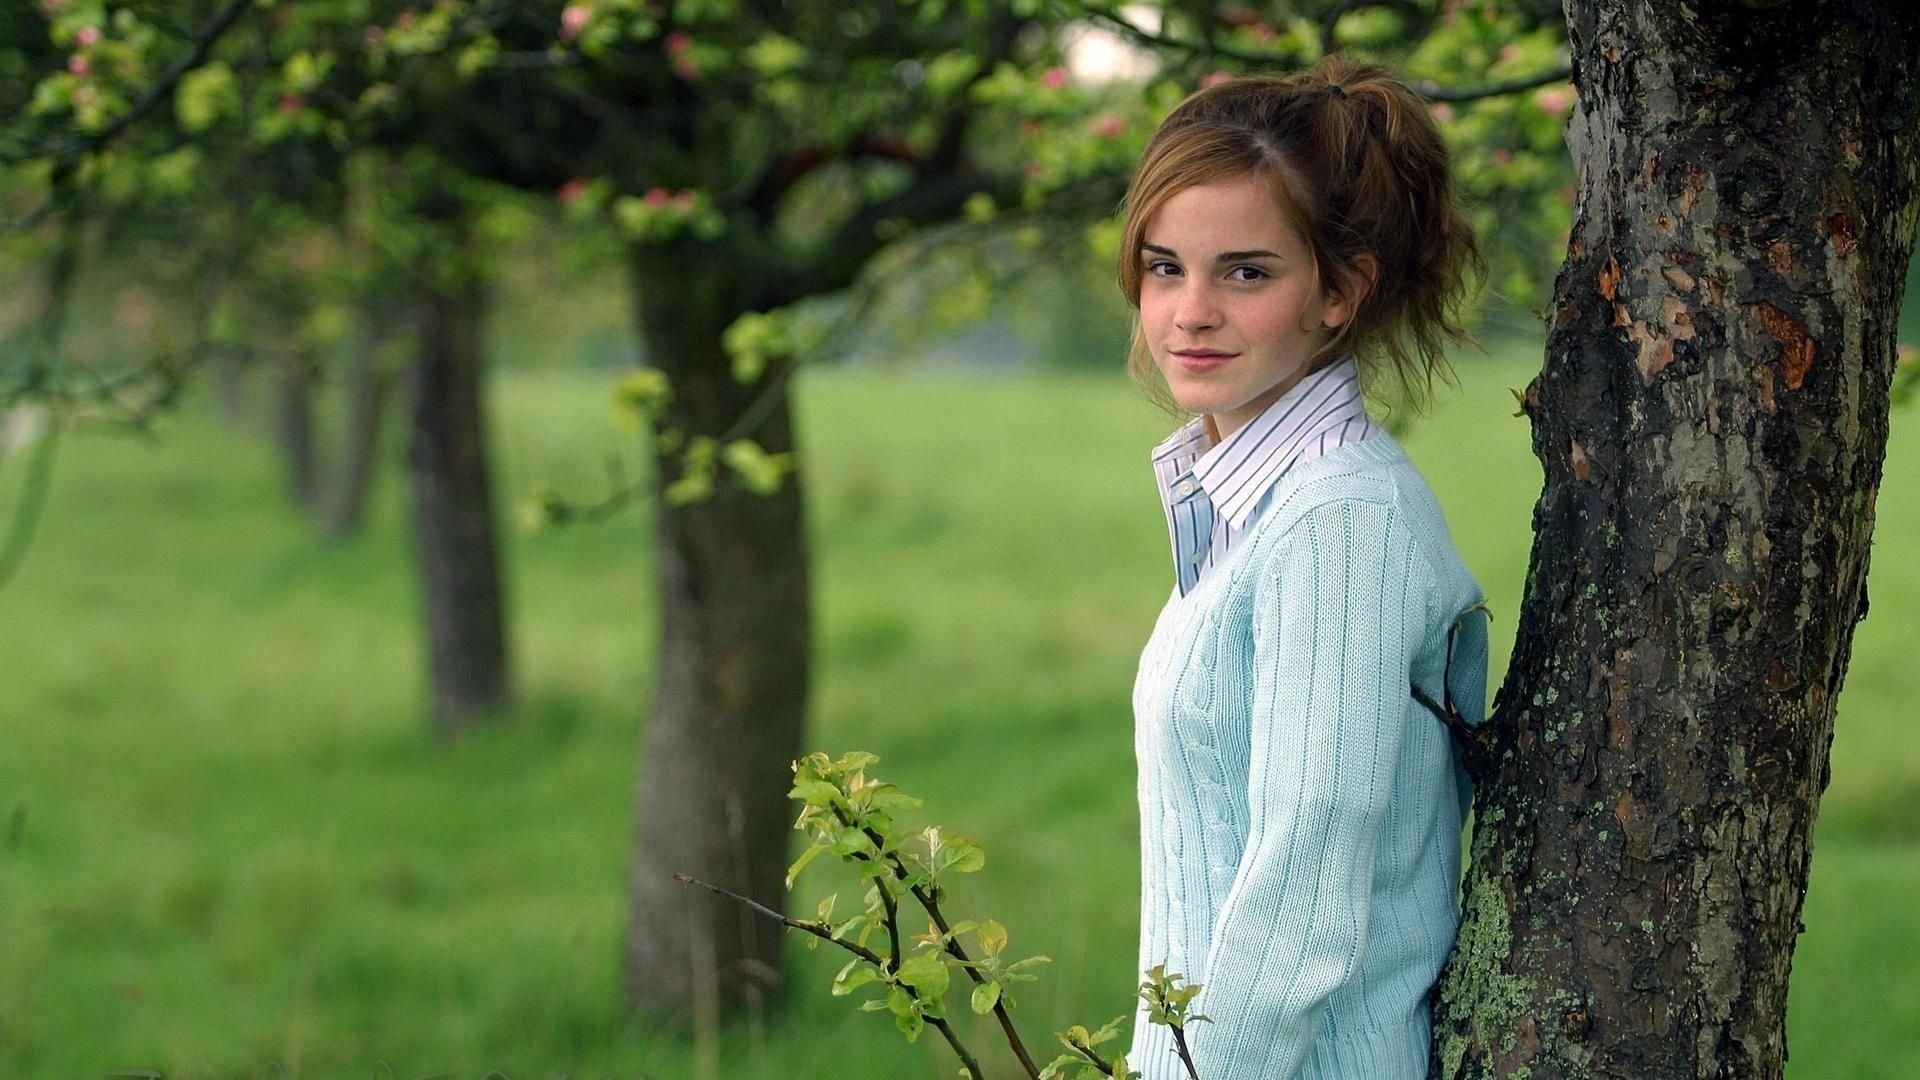 women, Brunette, Long hair, Women outdoors, Trees, Emma Watson, Actress, Smiling, Sweater, Shirt Wallpaper